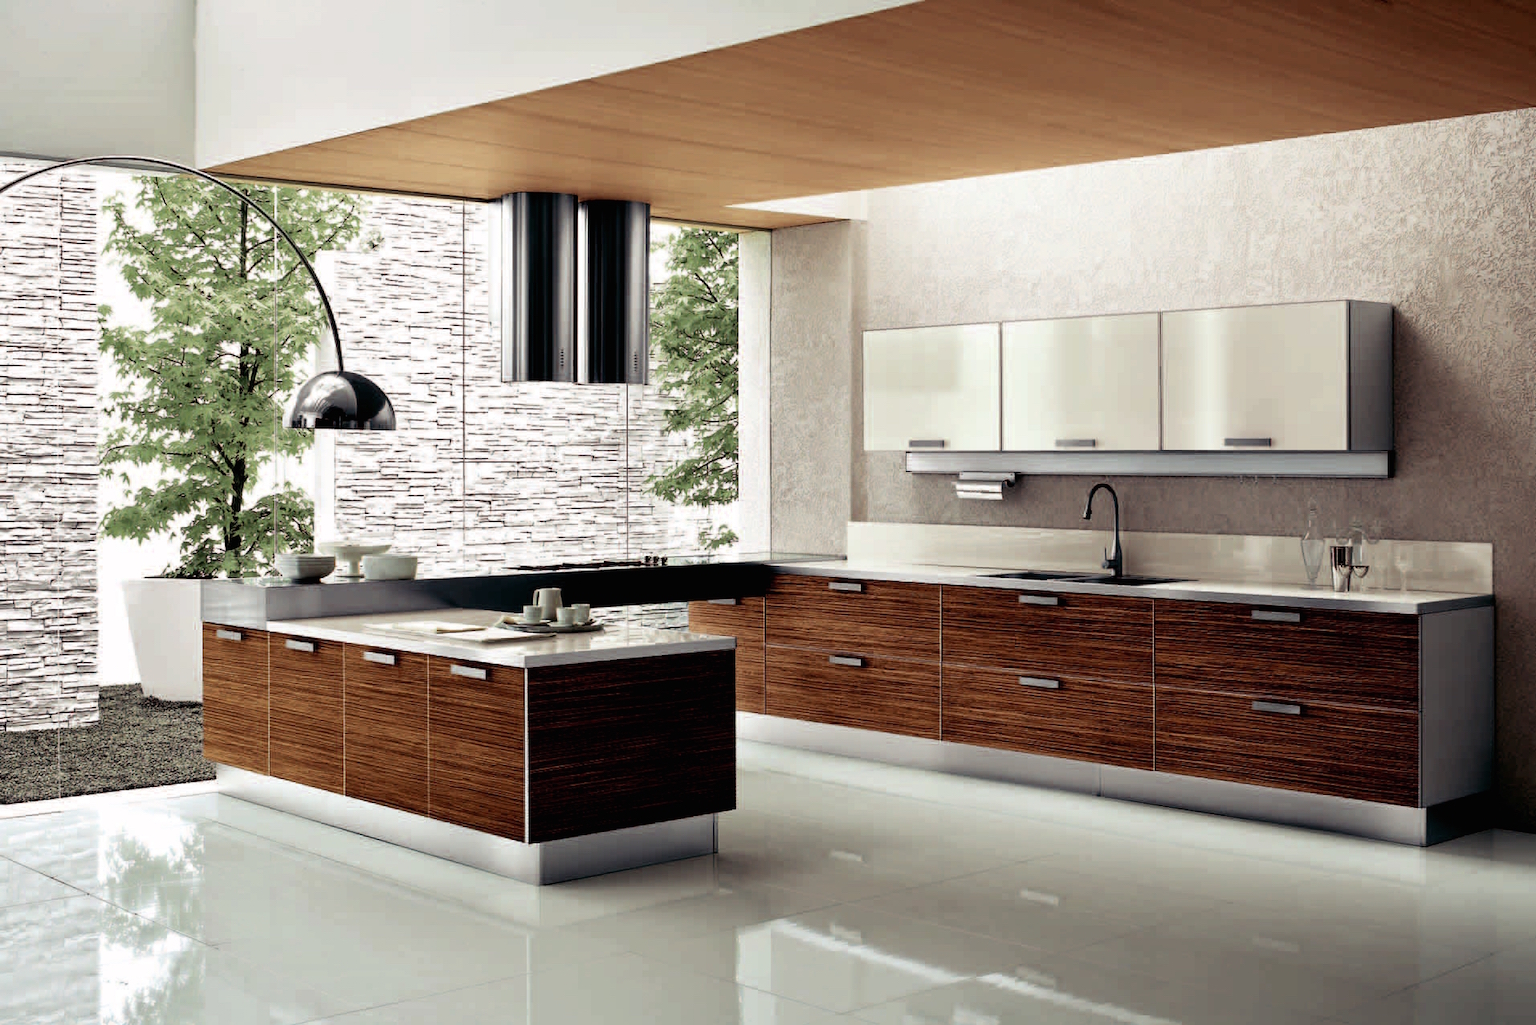 Modern Kitchen Design Trends 2015